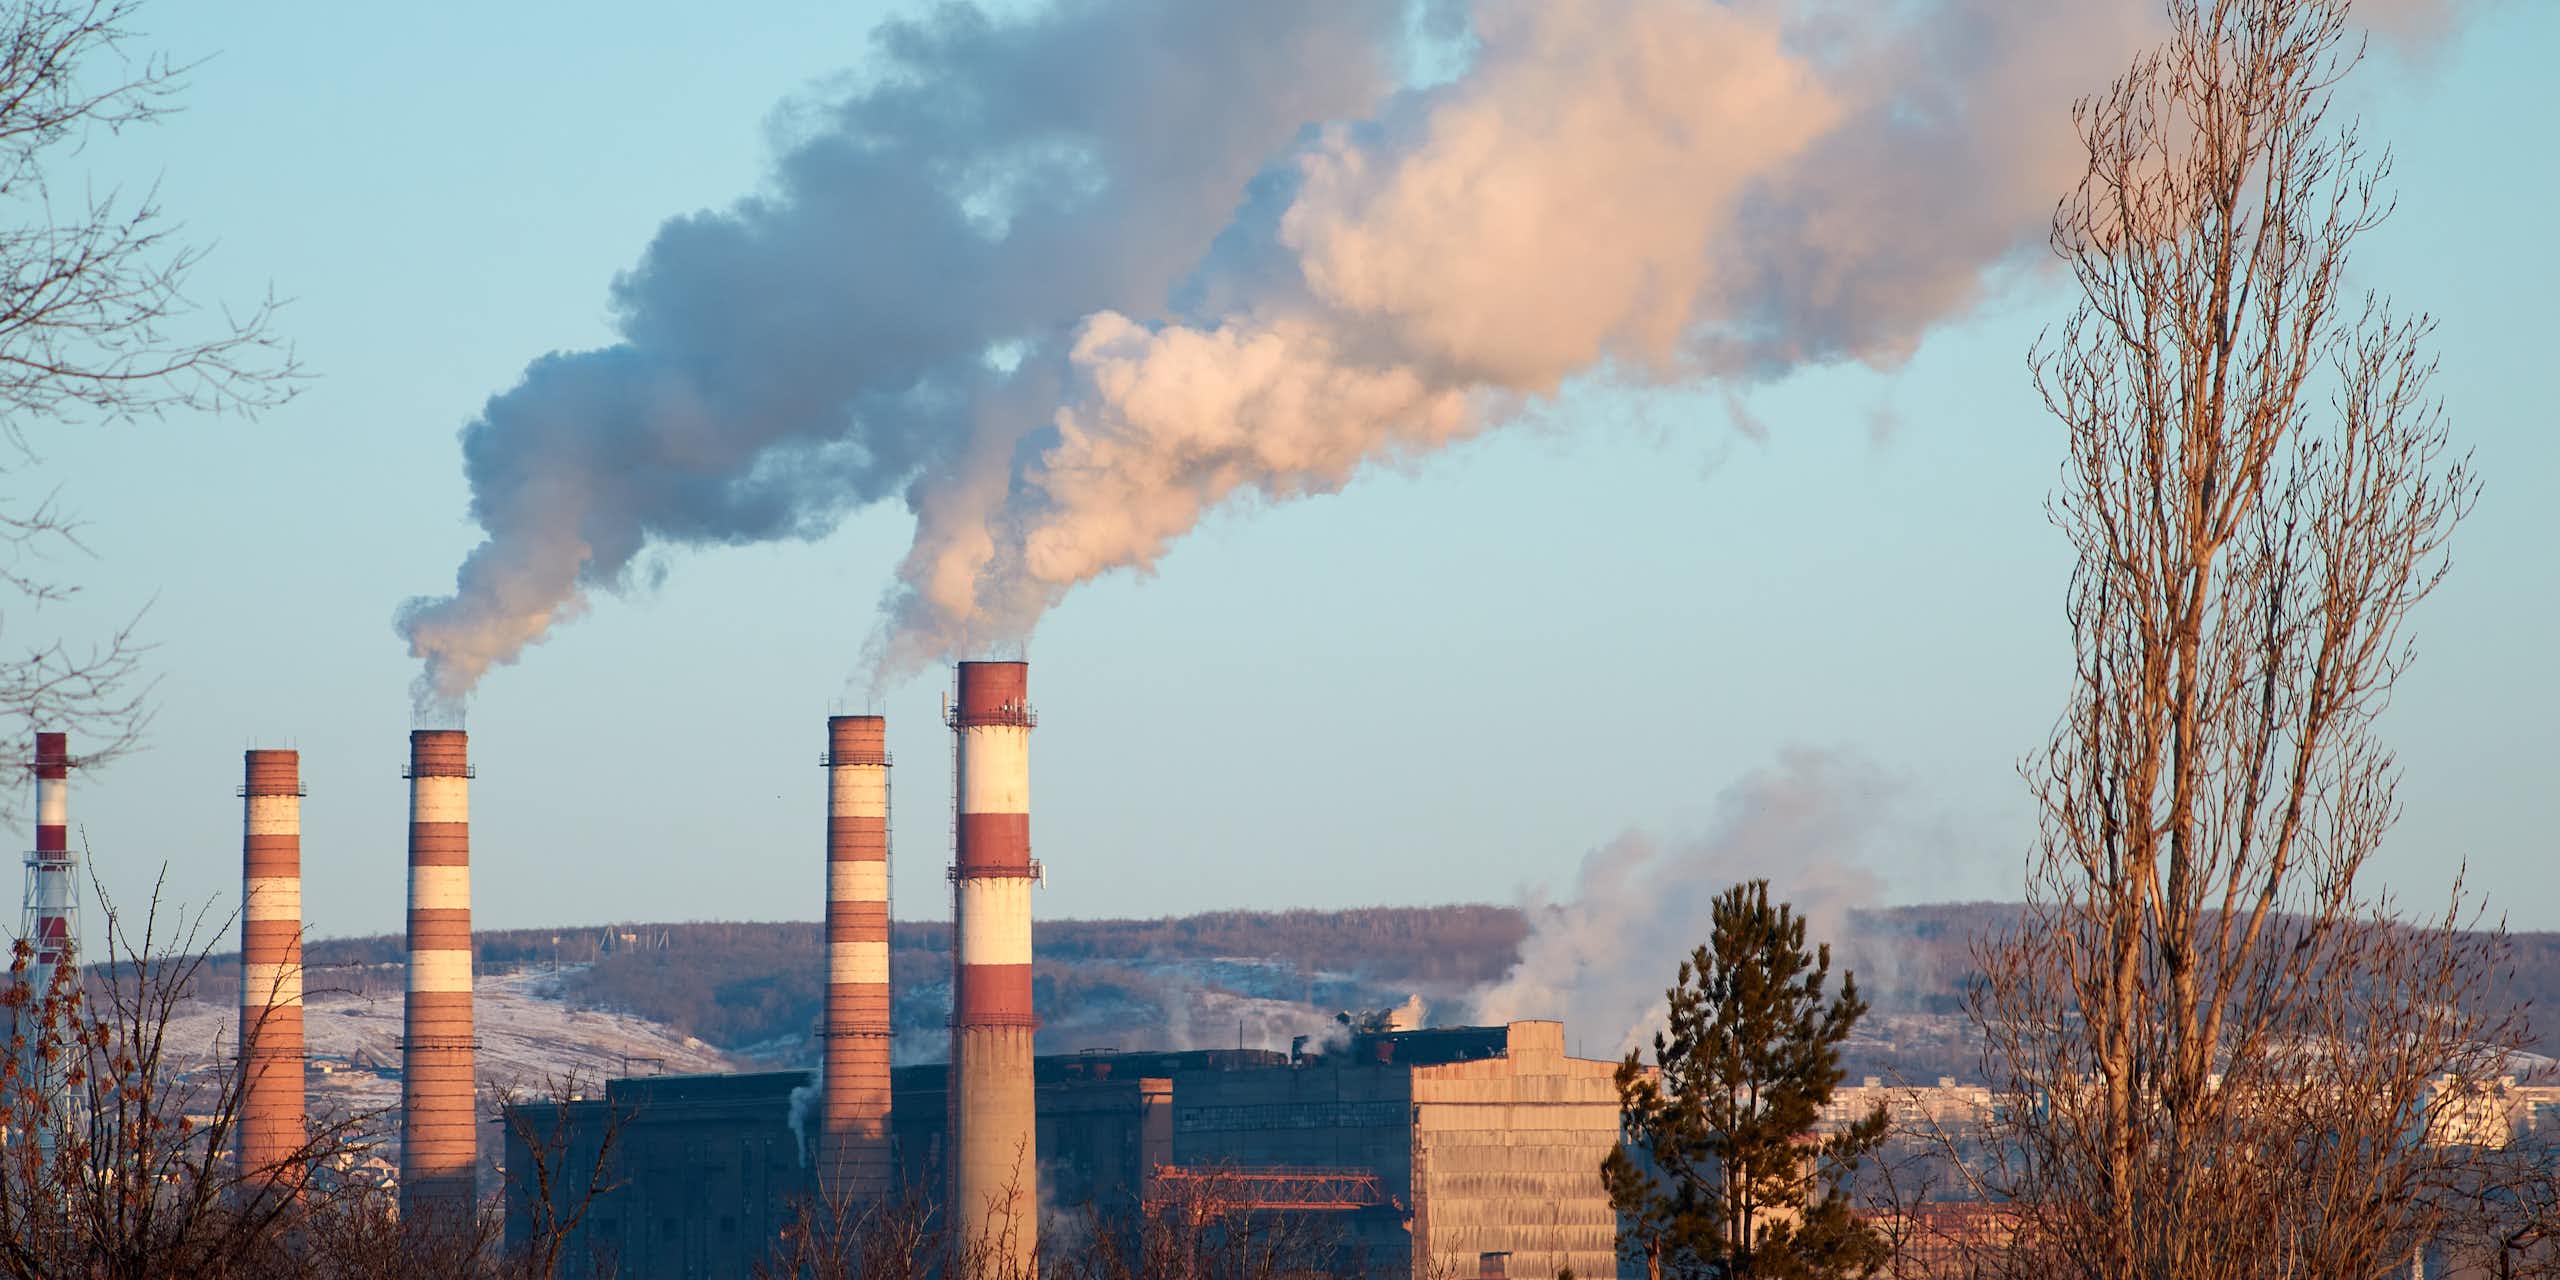 De la fumée sort des cheminées d'une usine pendant une journée ensoleillée, les polluants pénètrent dans l'atmosphère.